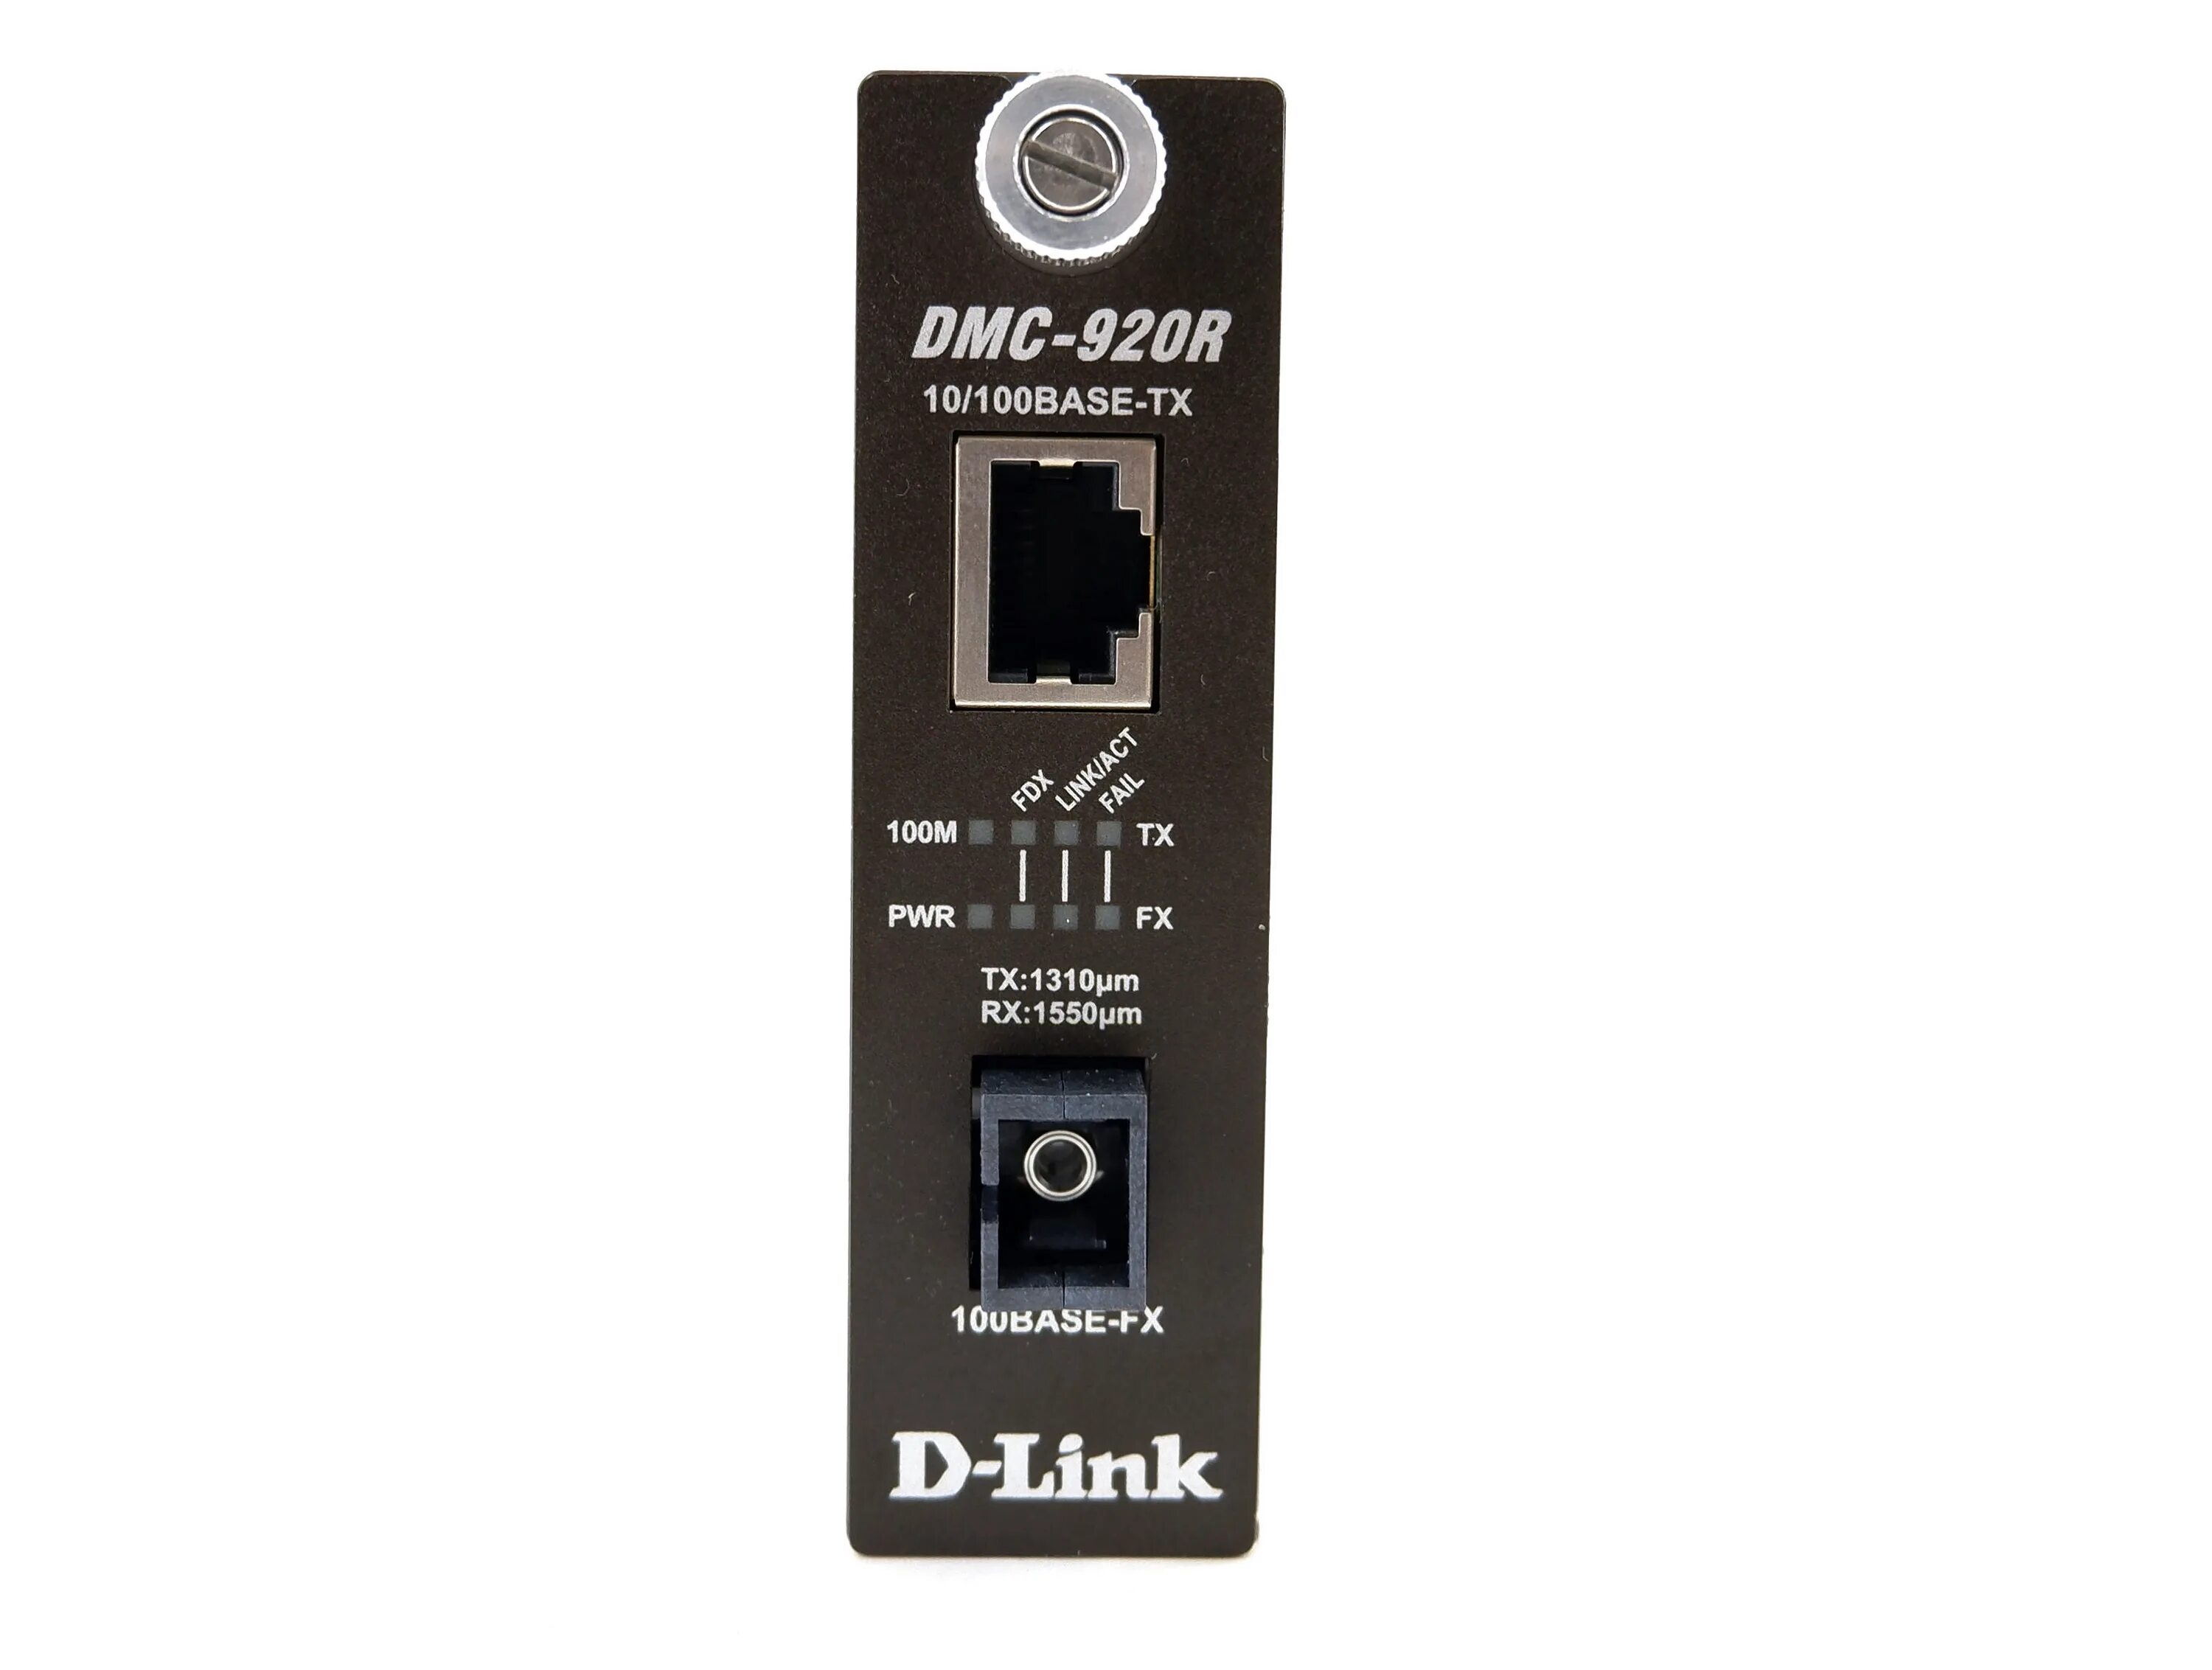 Медиаконвекторd-LINKDMC 920r. Медиаконвертер DMC-920r. D-link DMC-920r. Медиаконвертер DMC-920r(10125162/050310/0002021/10). Dmc 920r